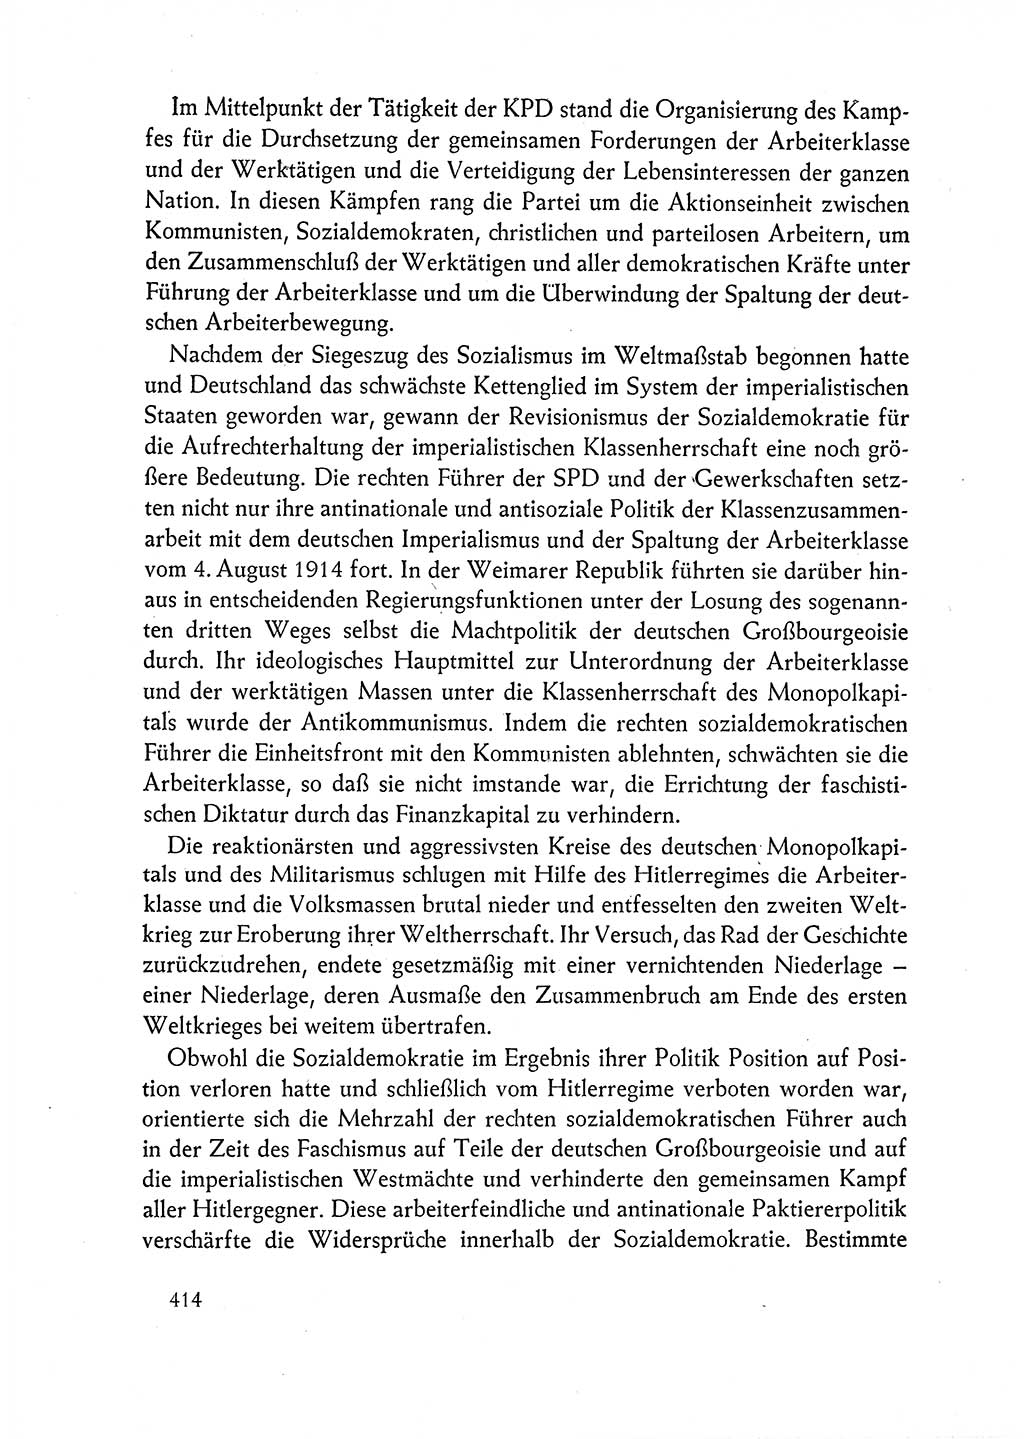 Dokumente der Sozialistischen Einheitspartei Deutschlands (SED) [Deutsche Demokratische Republik (DDR)] 1962-1963, Seite 414 (Dok. SED DDR 1962-1963, S. 414)